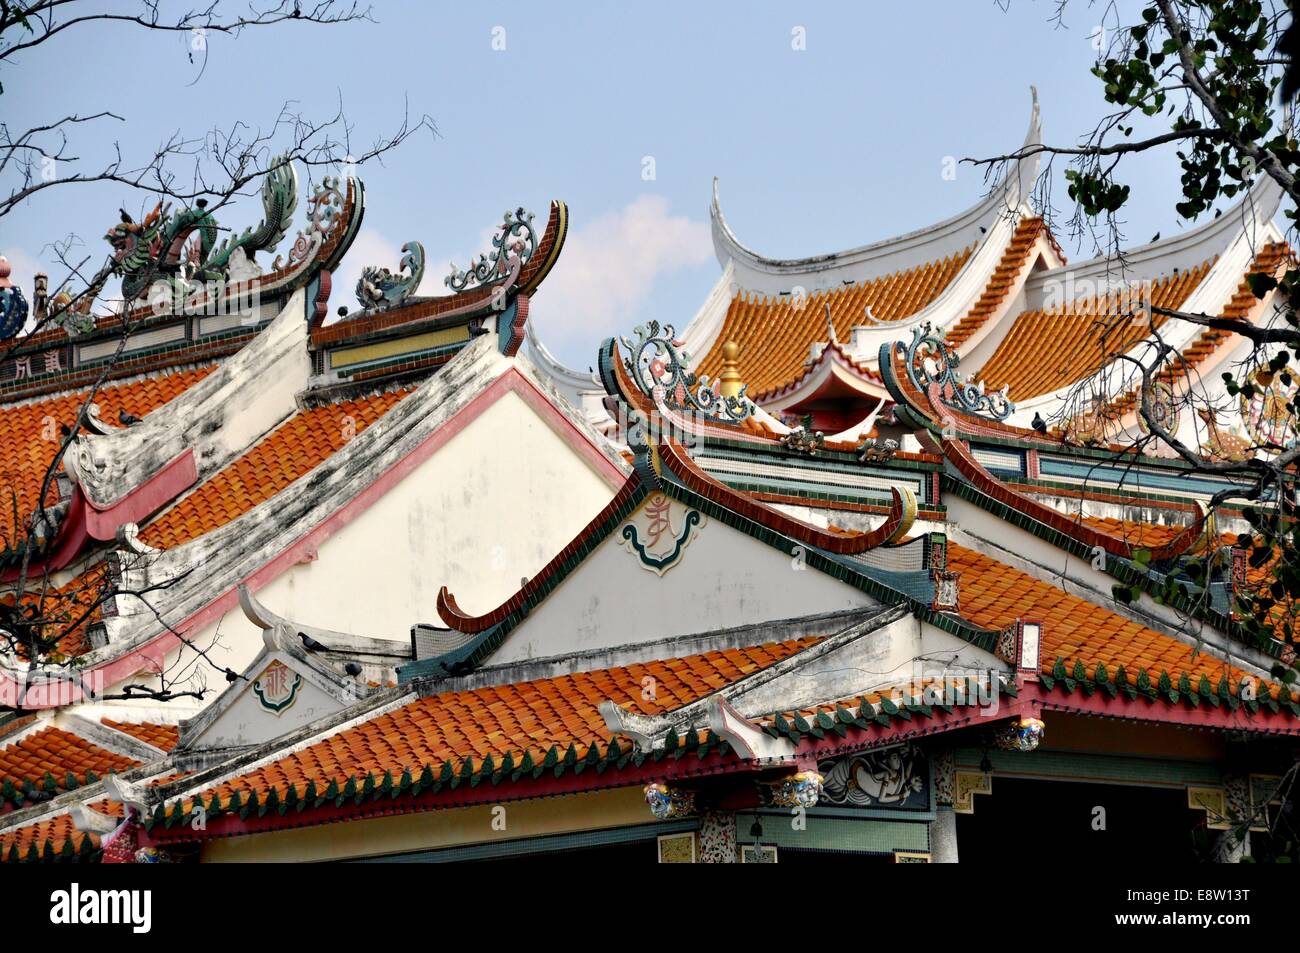 KANCHANABURI THAILANDIA: tetti con battenti cornicione decorato con draghi in ceramica e ornamenti a Qing Shou Si tempio Foto Stock